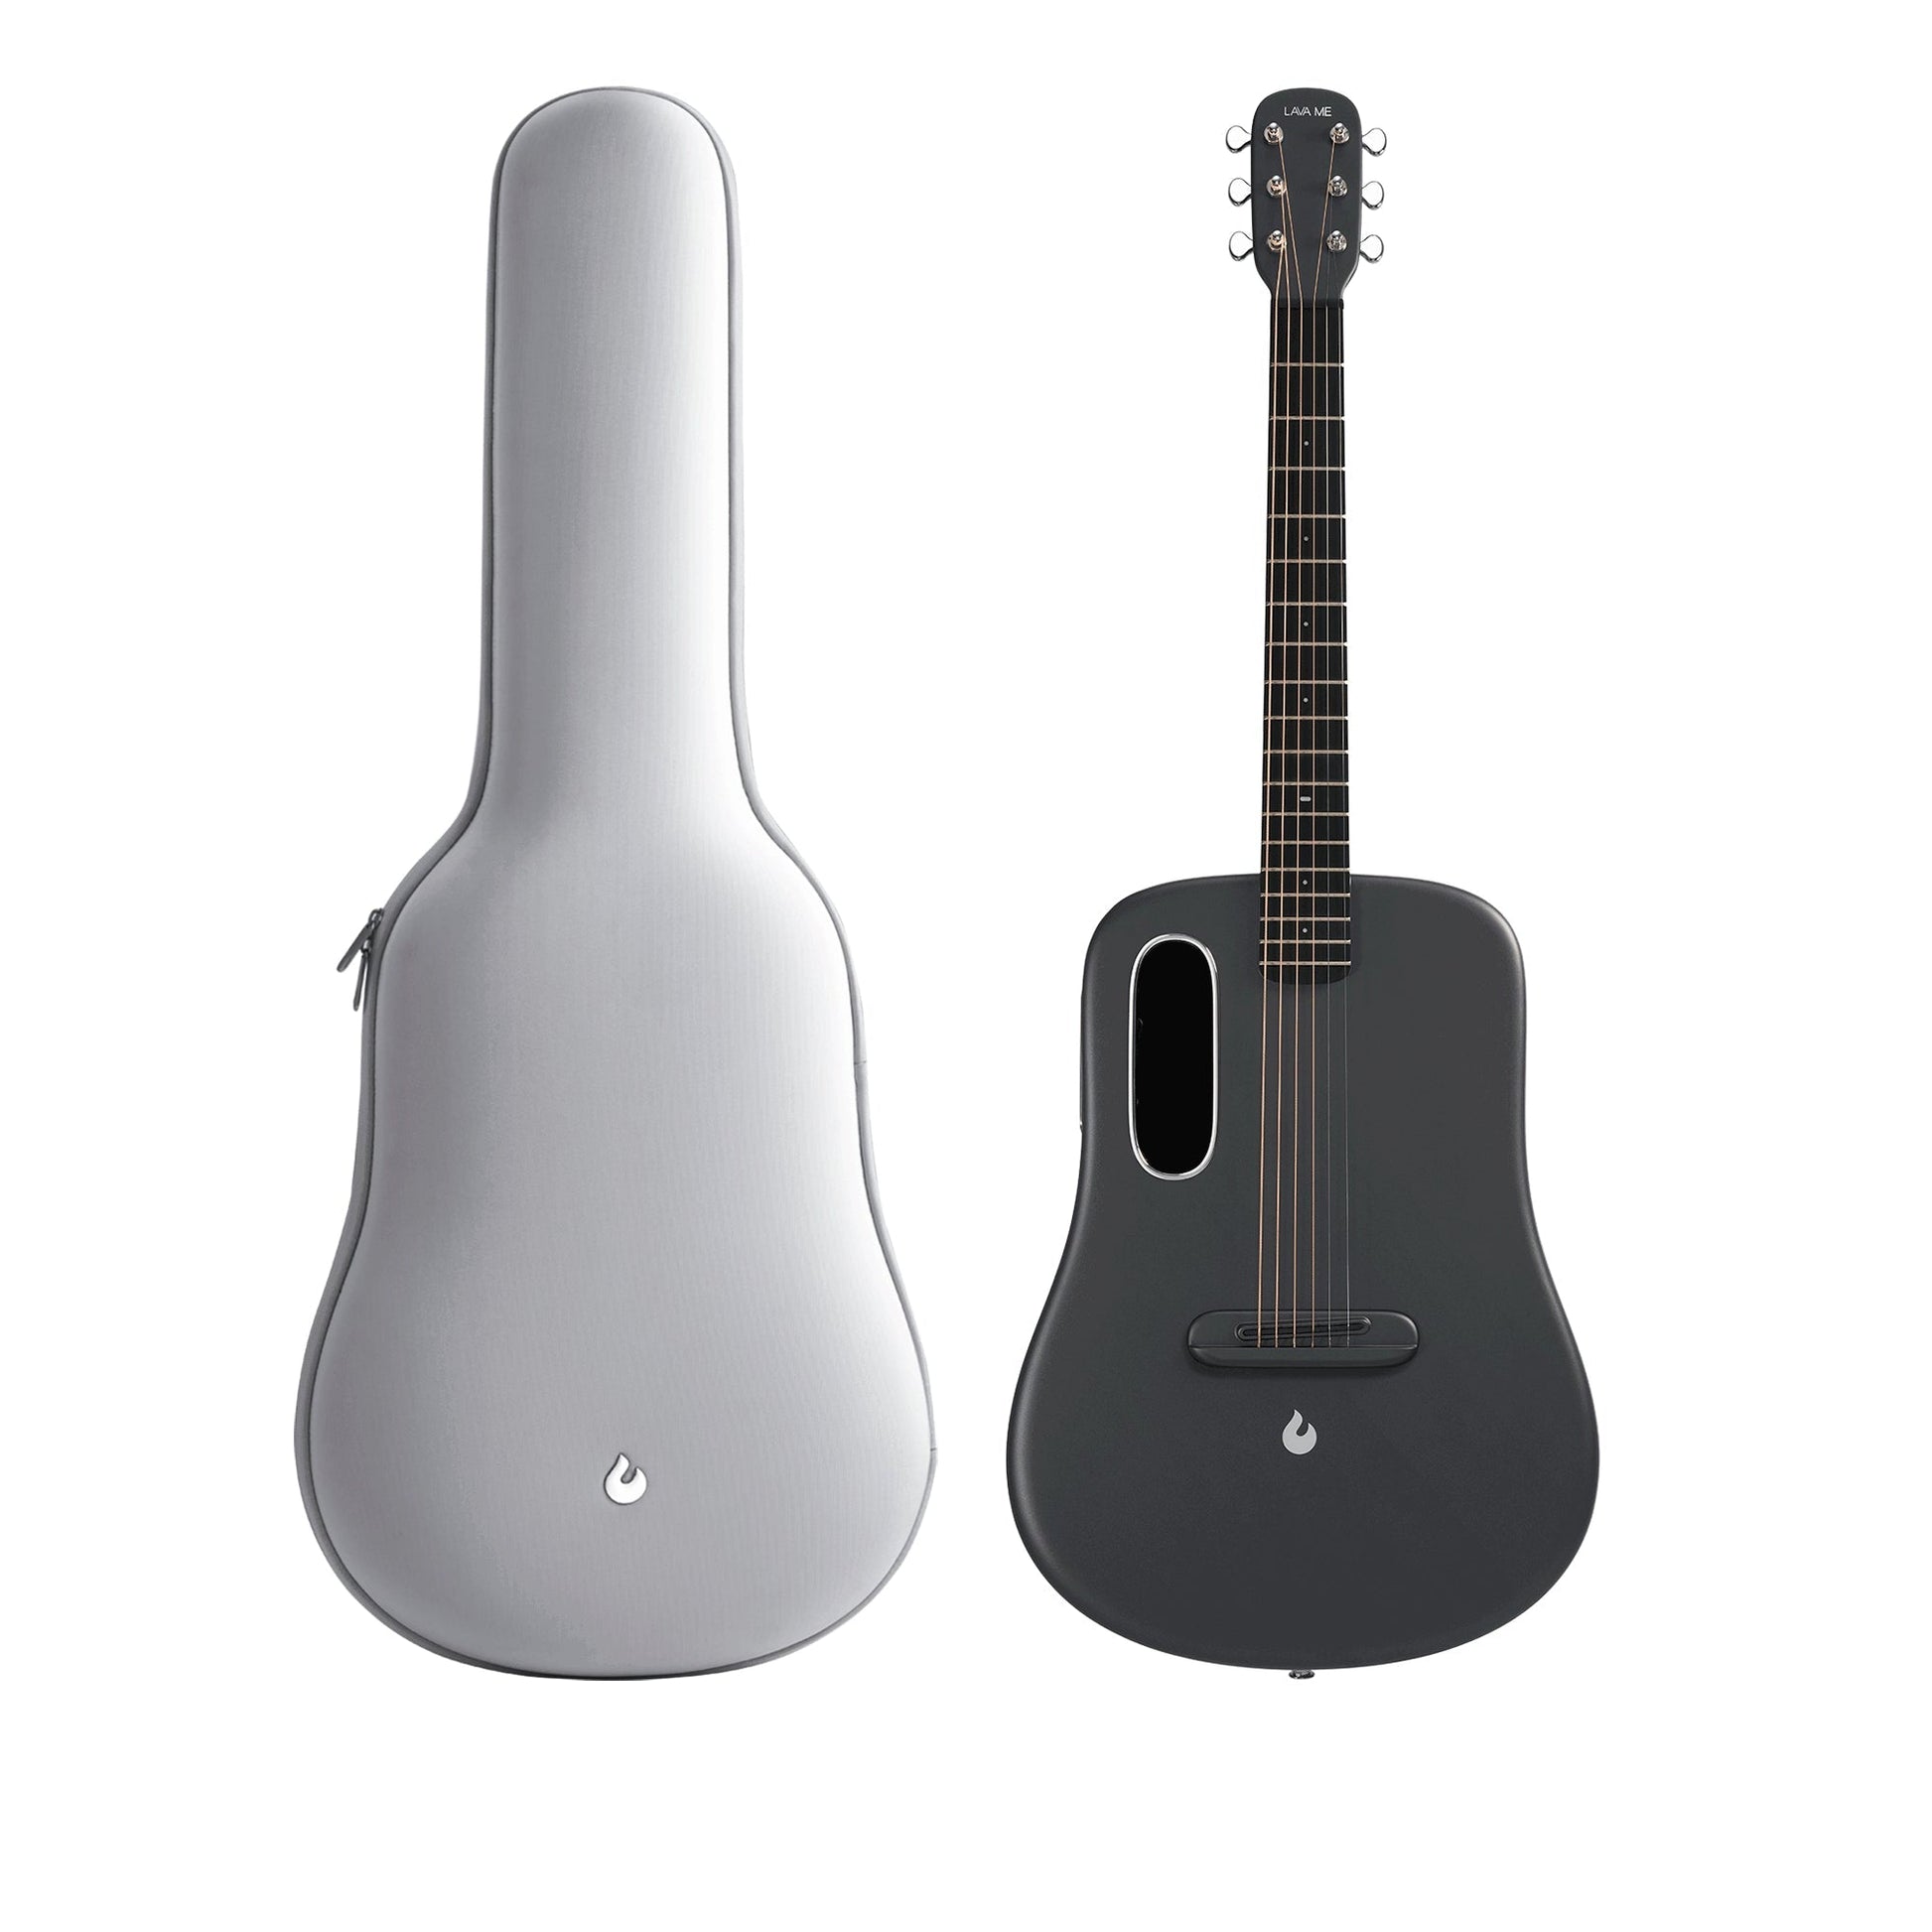 Đàn Guitar Acoustic Lava Me 4 Carbon Fiber - Size 38, Space Gray - Việt Music